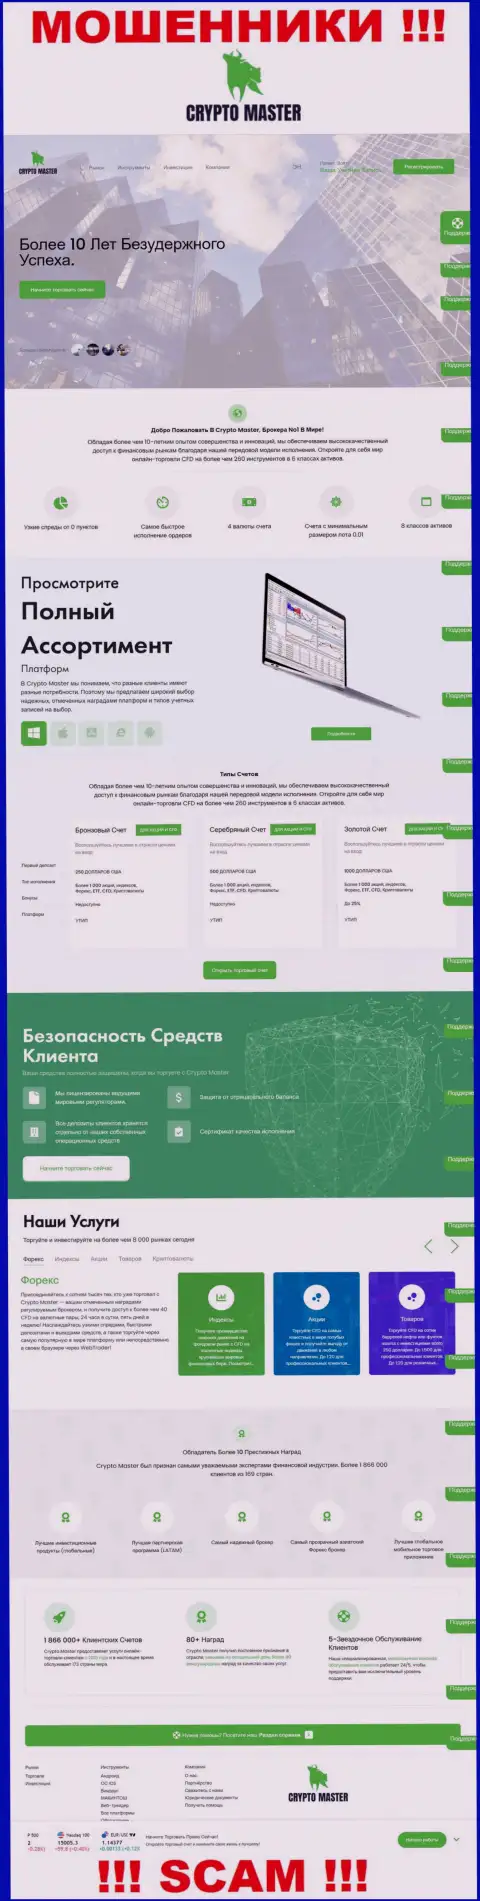 Официальная online-страничка мошеннического проекта Крипто-Мастер Ко Ук